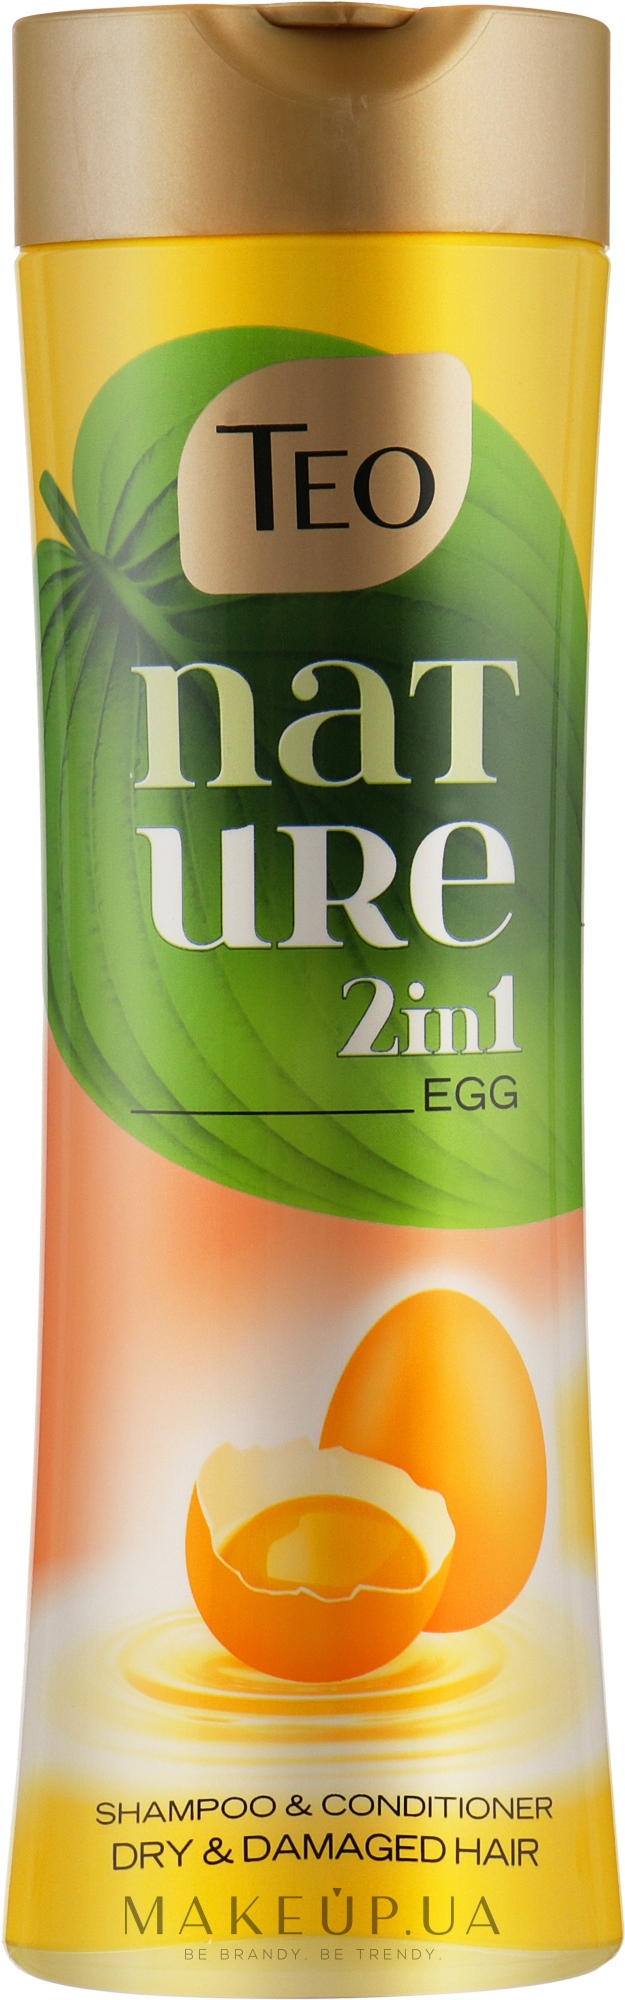 Шампунь-бальзам для сухого й пошкодженого волосся - Teo Nature 2in1 Shampoo & Conditioner Egg — фото 350ml